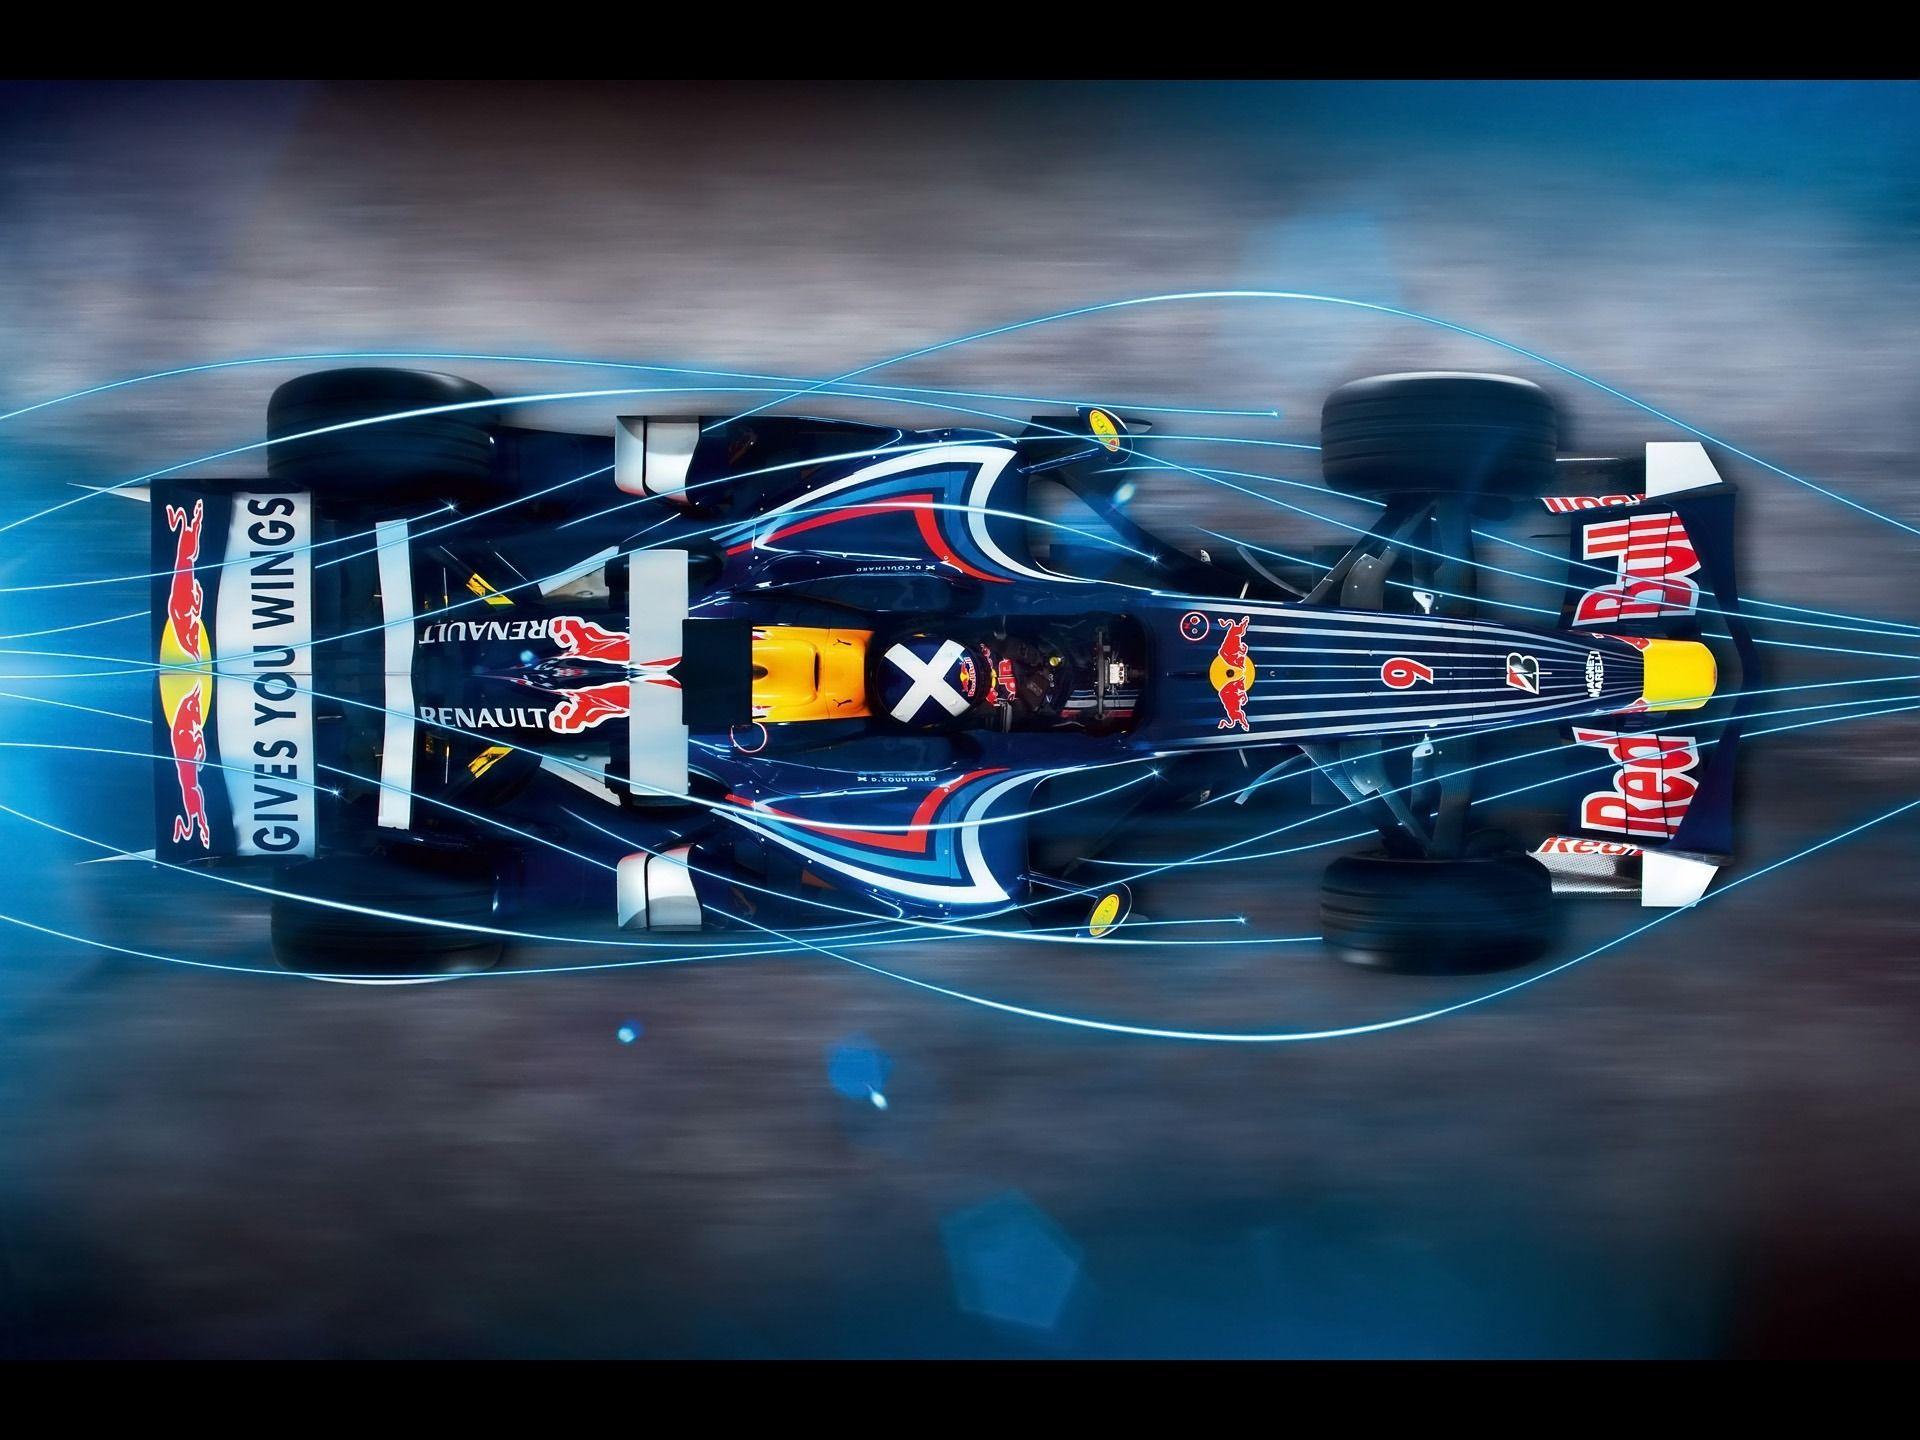 Red Bull RB4 F1 Wallpaper Formula 1 Cars Wallpaper in jpg format